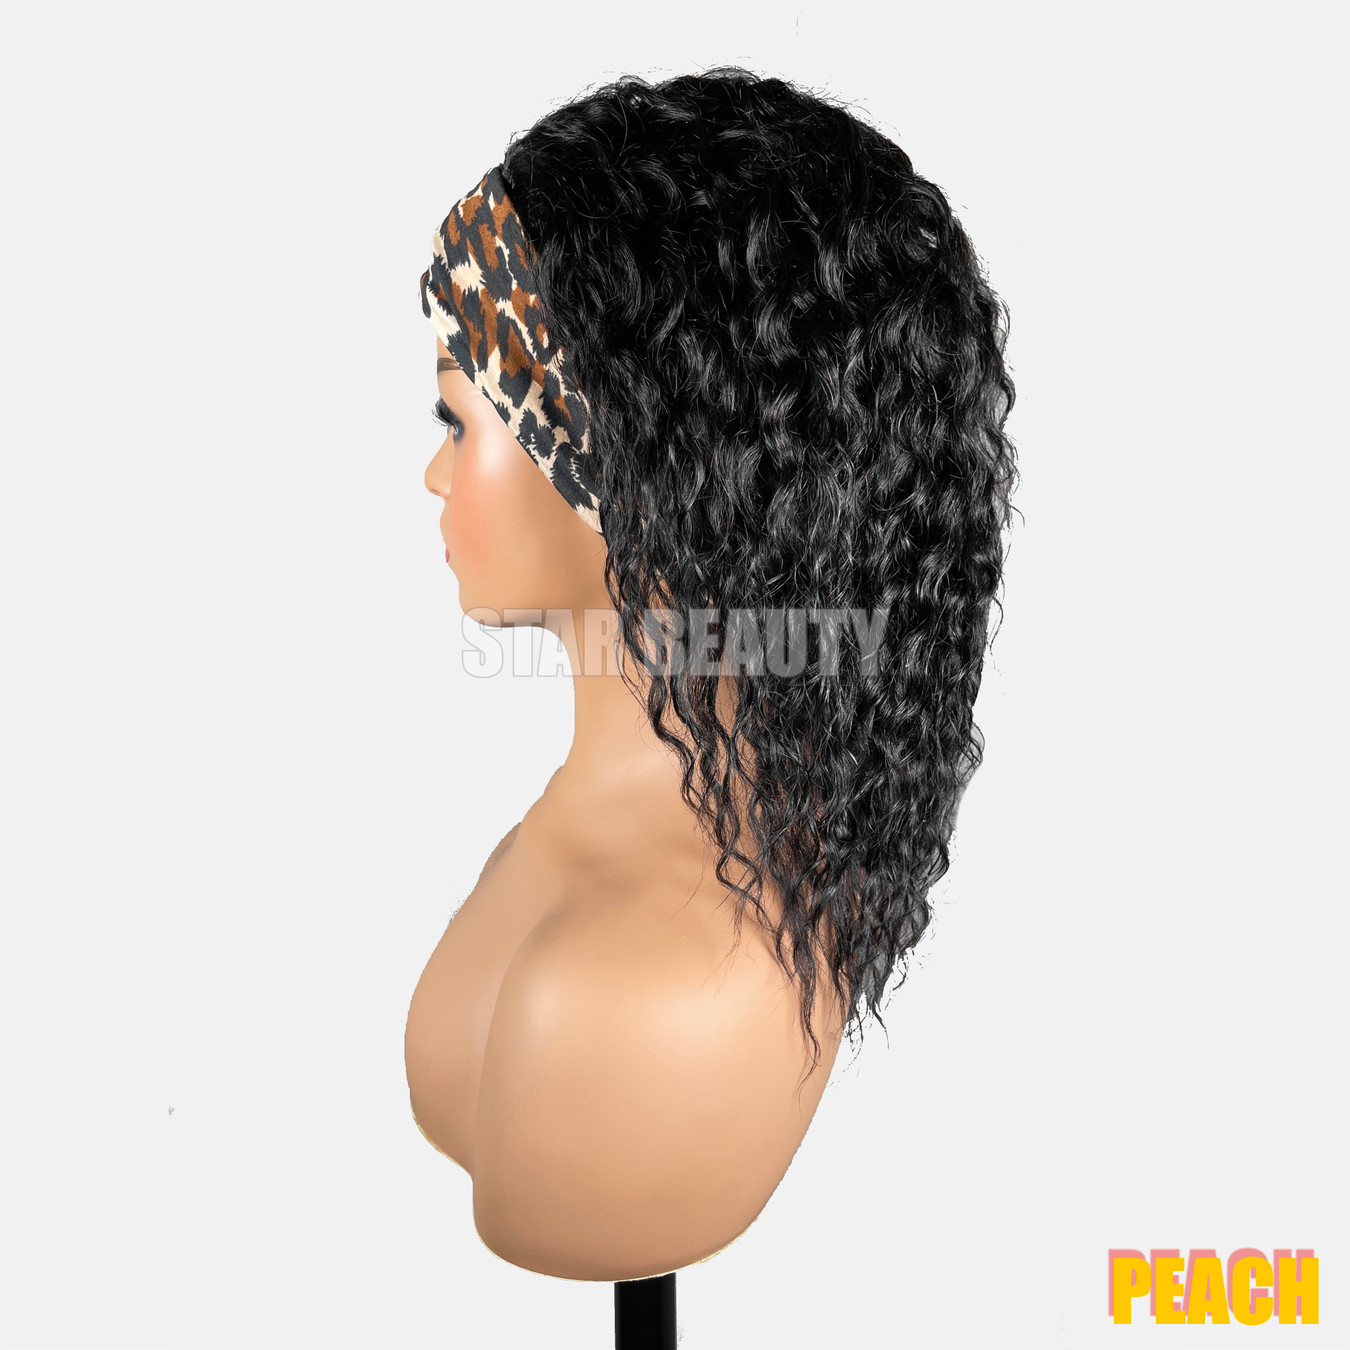 Bellatique 100% Human Hair Band Wig - PEACH